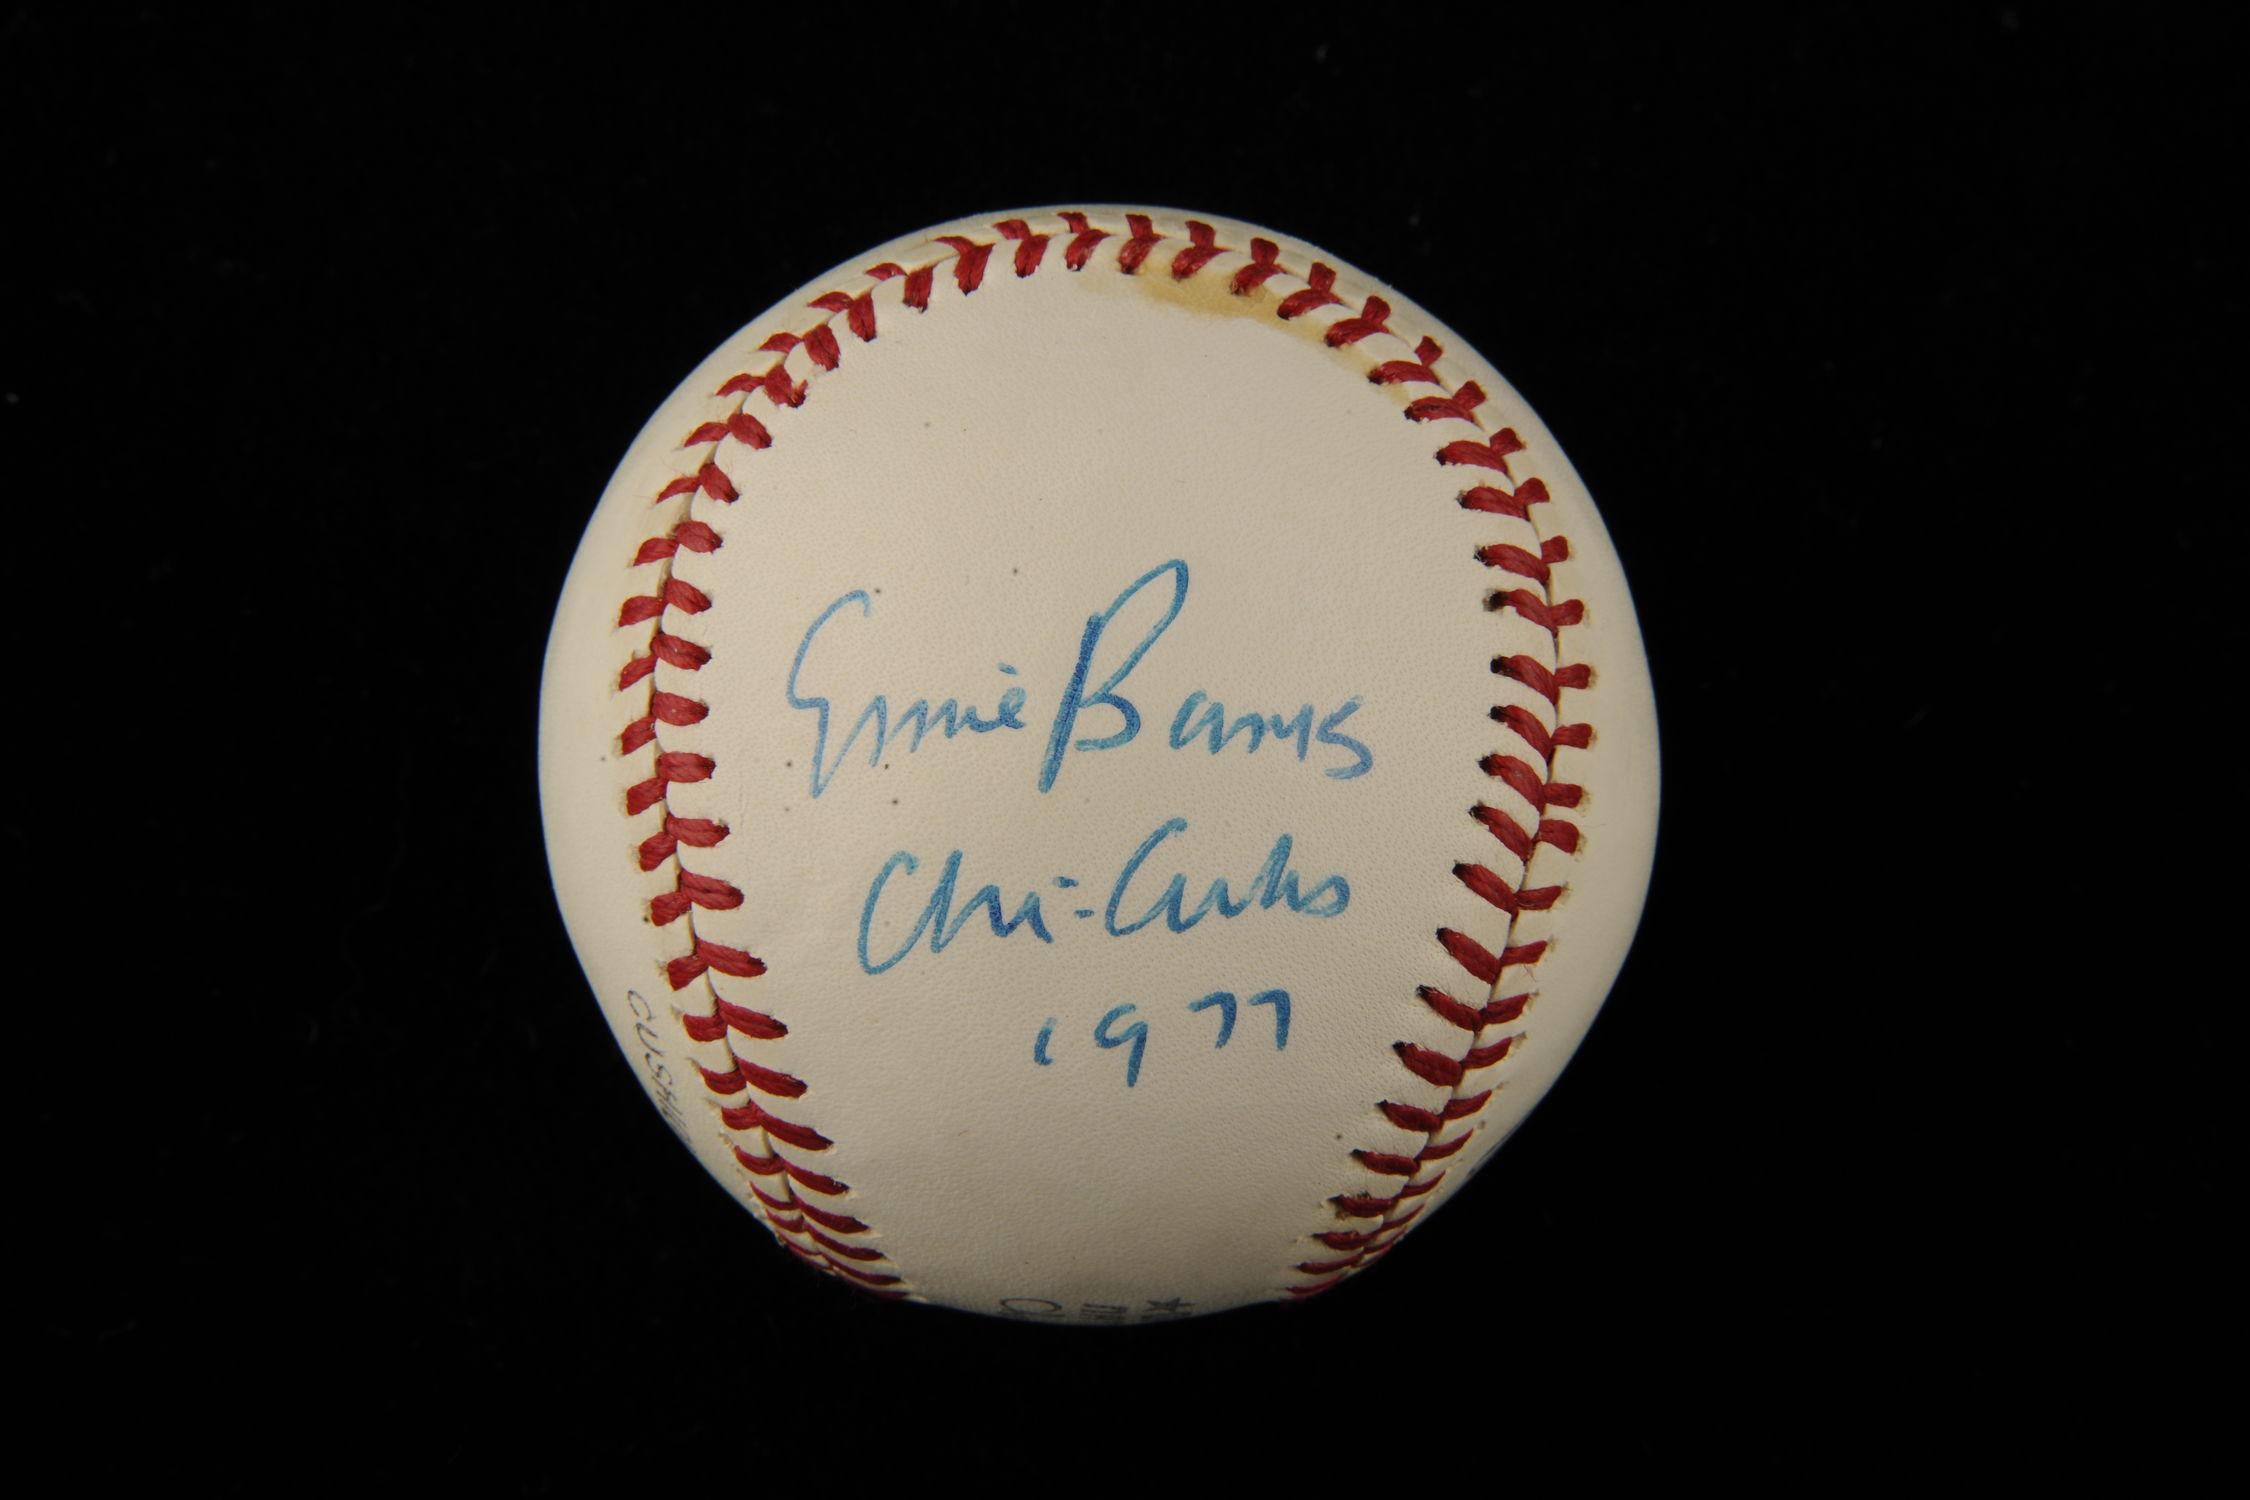 Ernie Banks Signed Baseball